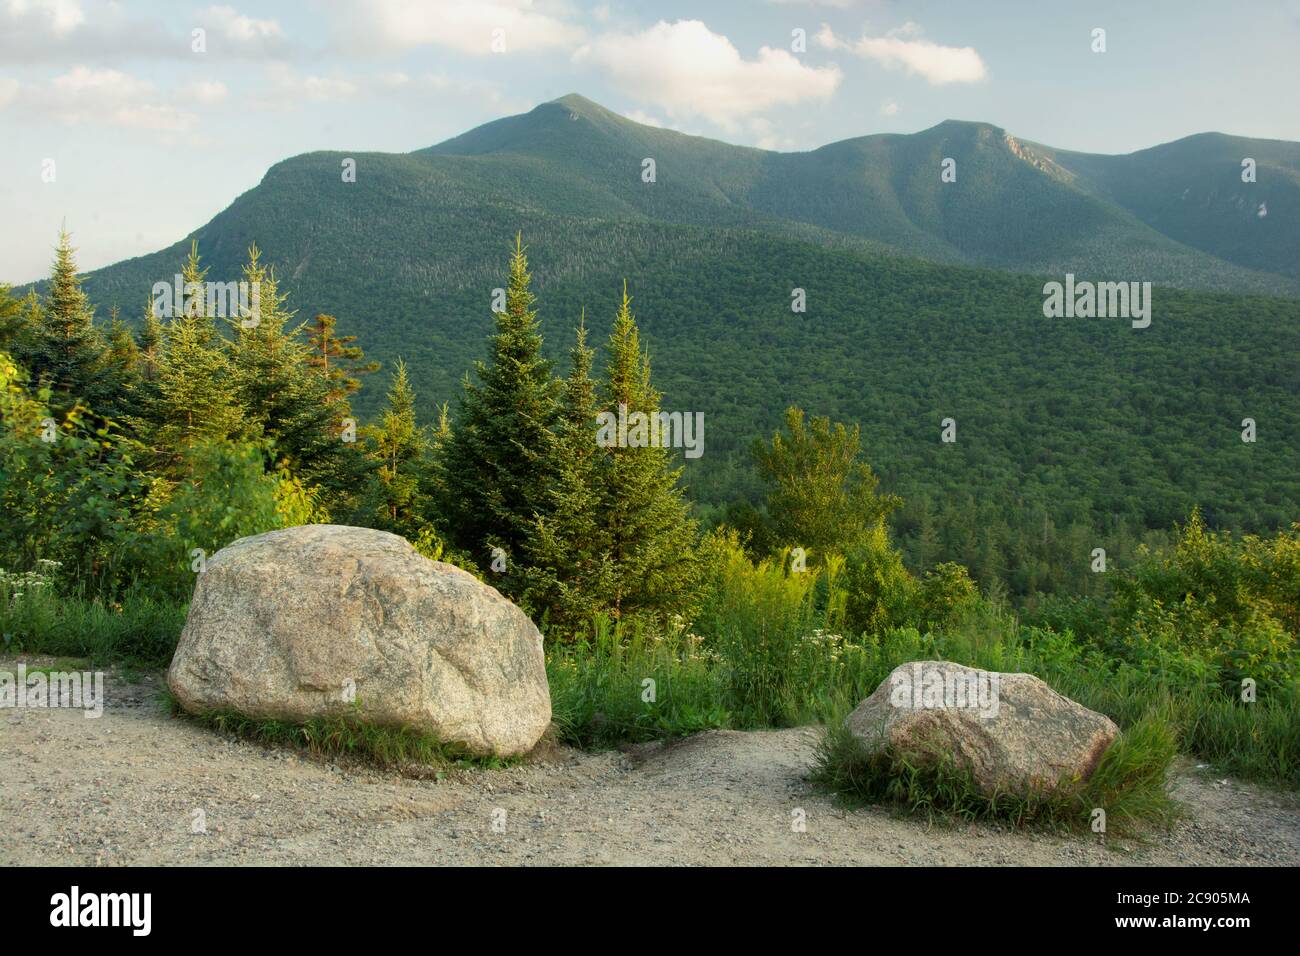 Kancamagus Highway, White Mountain National Forest, New Hampshire. Malerische aussicht auf üppige Wälder, immergrüne Bäume und hohe Gipfel des Mount Osceola. Stockfoto